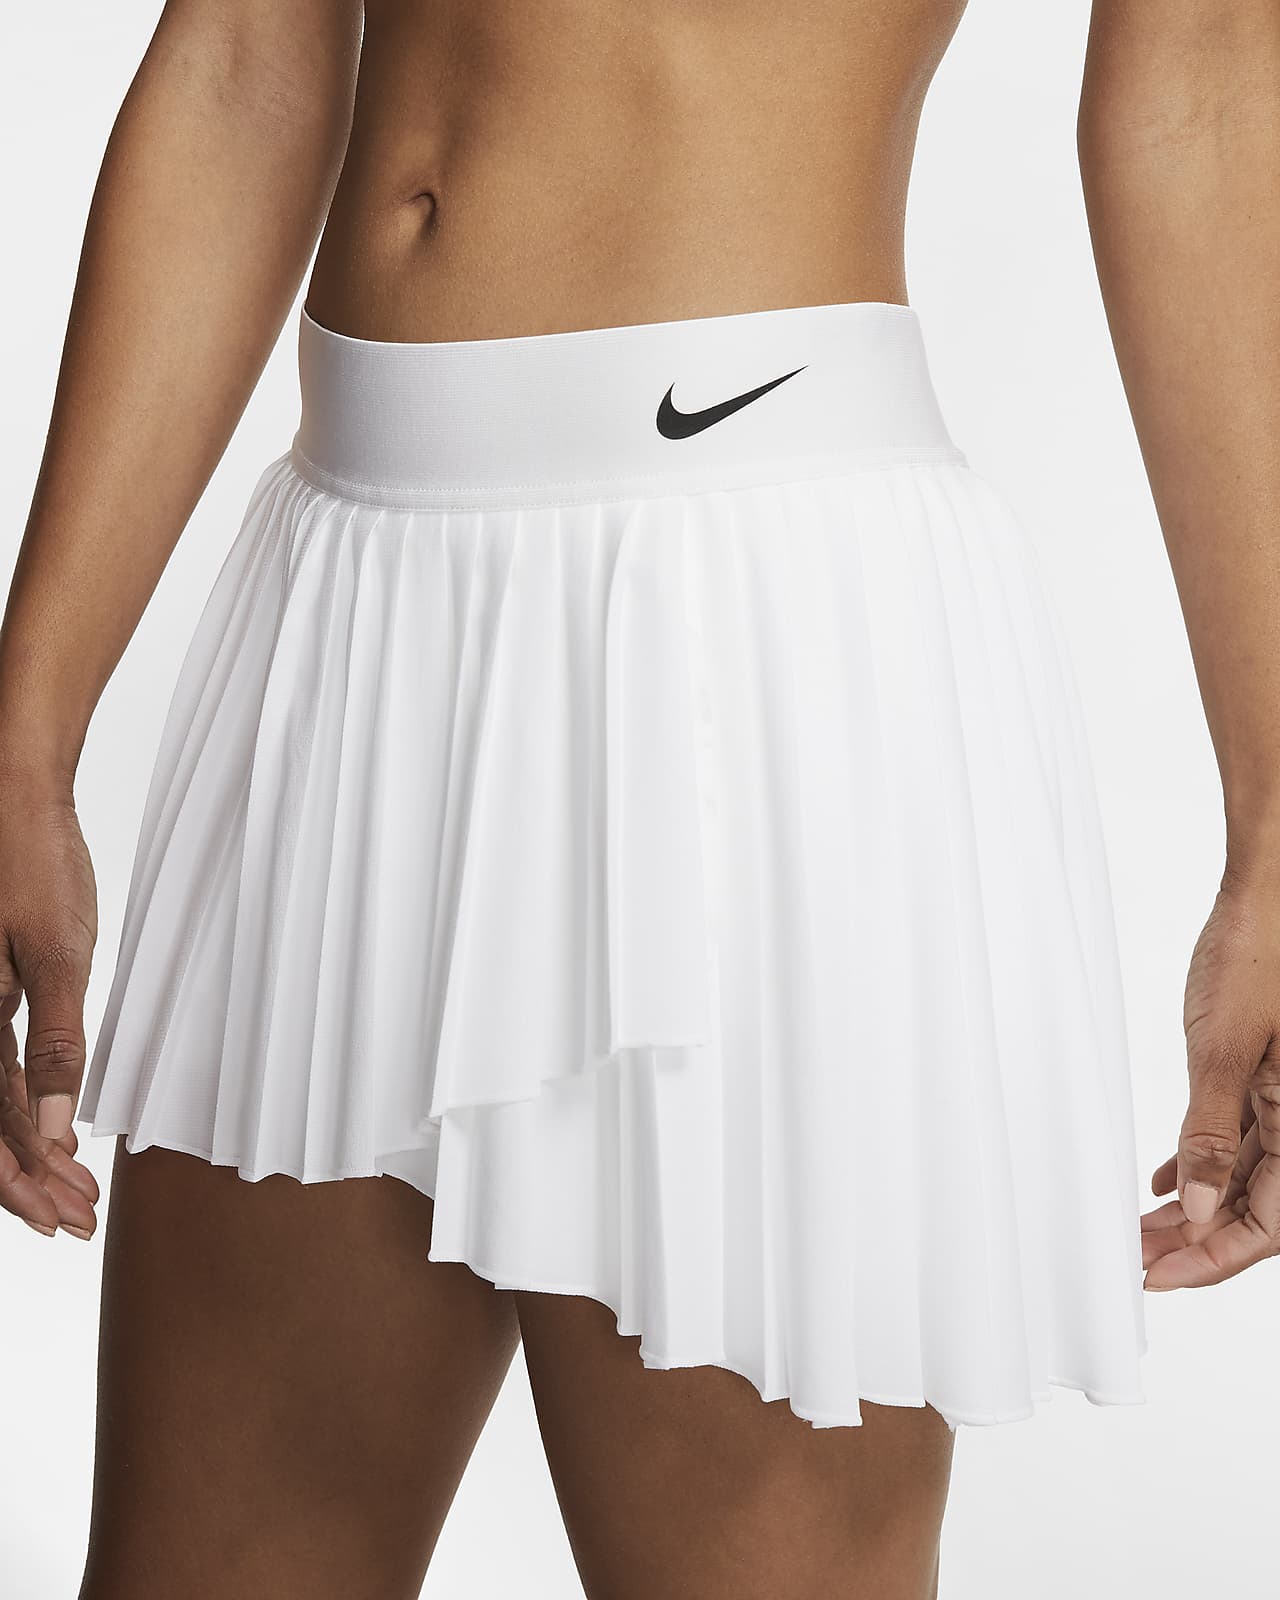 Falda de tenis para mujer NikeCourt Victory. Nike.com